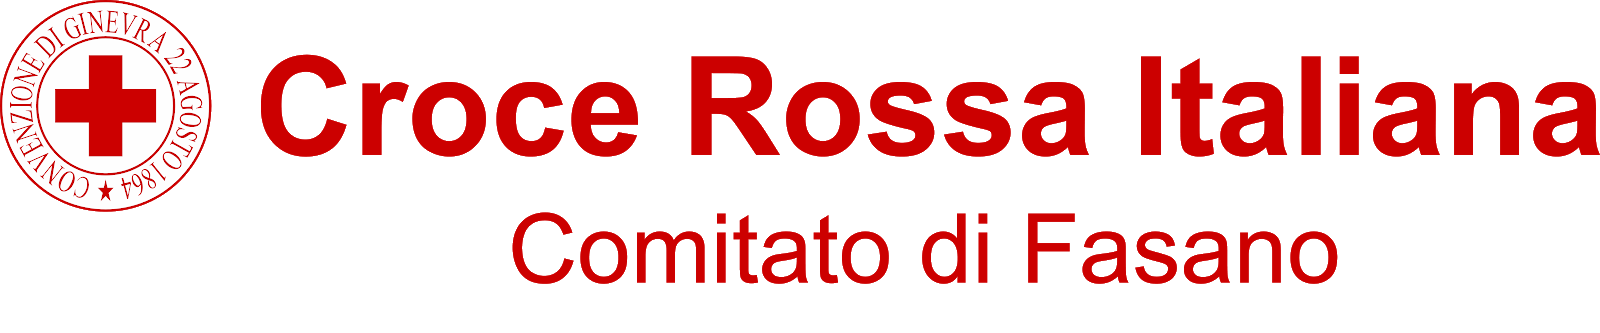 Croce Rossa Italiana - Comitato di Fasano